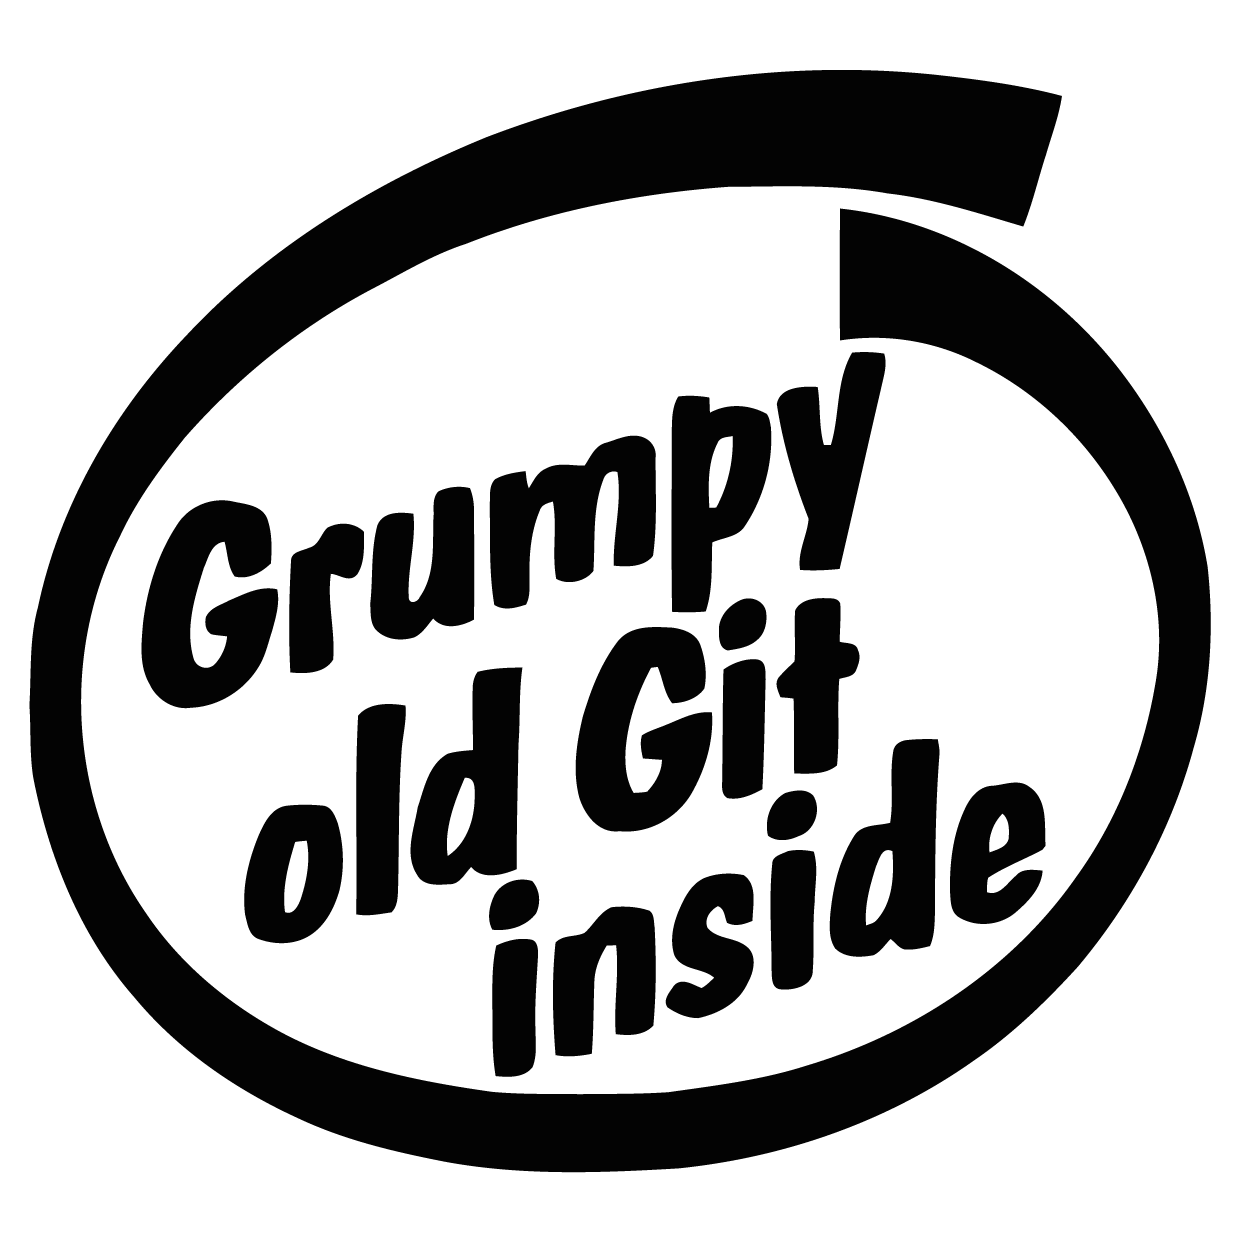 Grumpy G*t Sticker